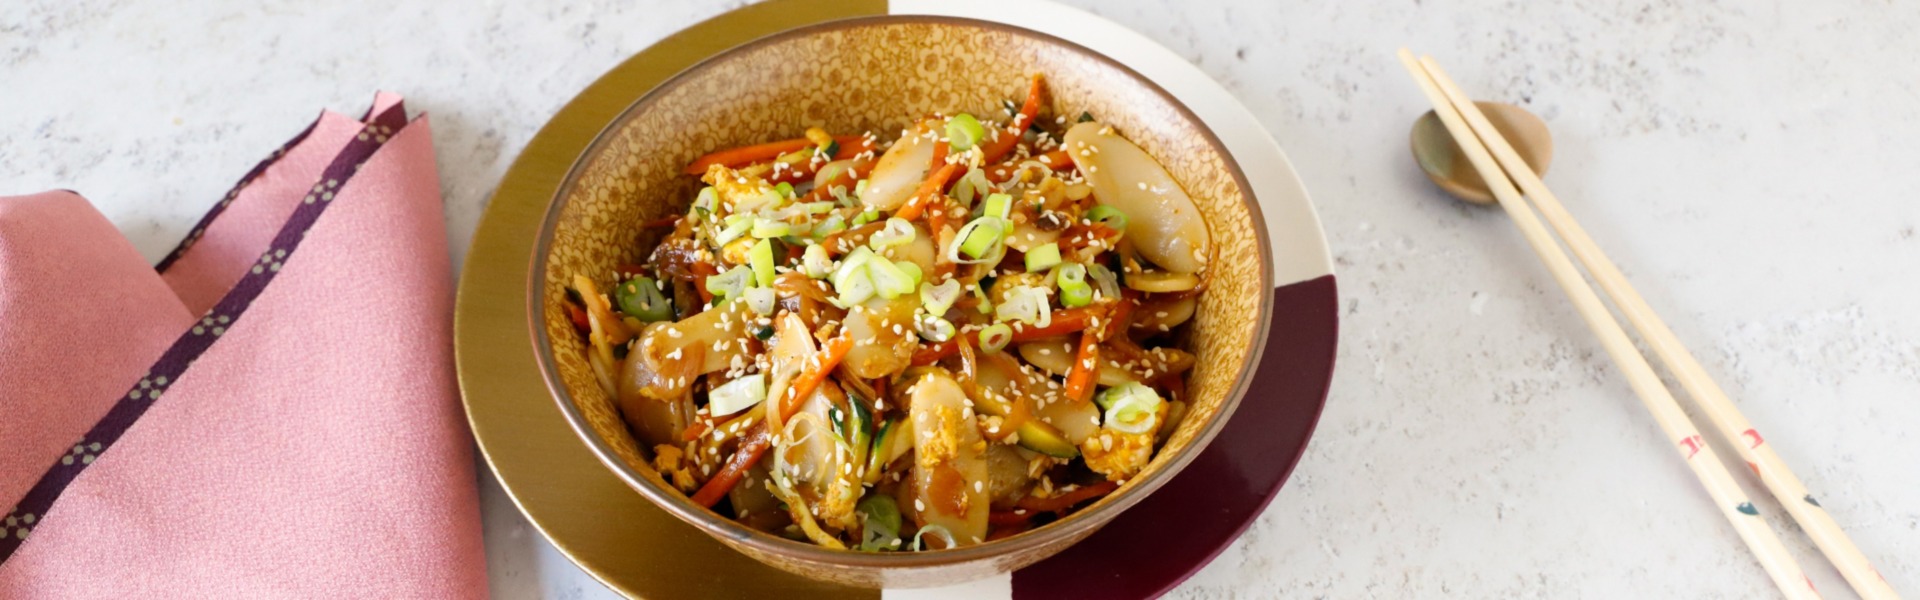 Gnocchi di riso con verdure, un primo piatto tradizionale cinese